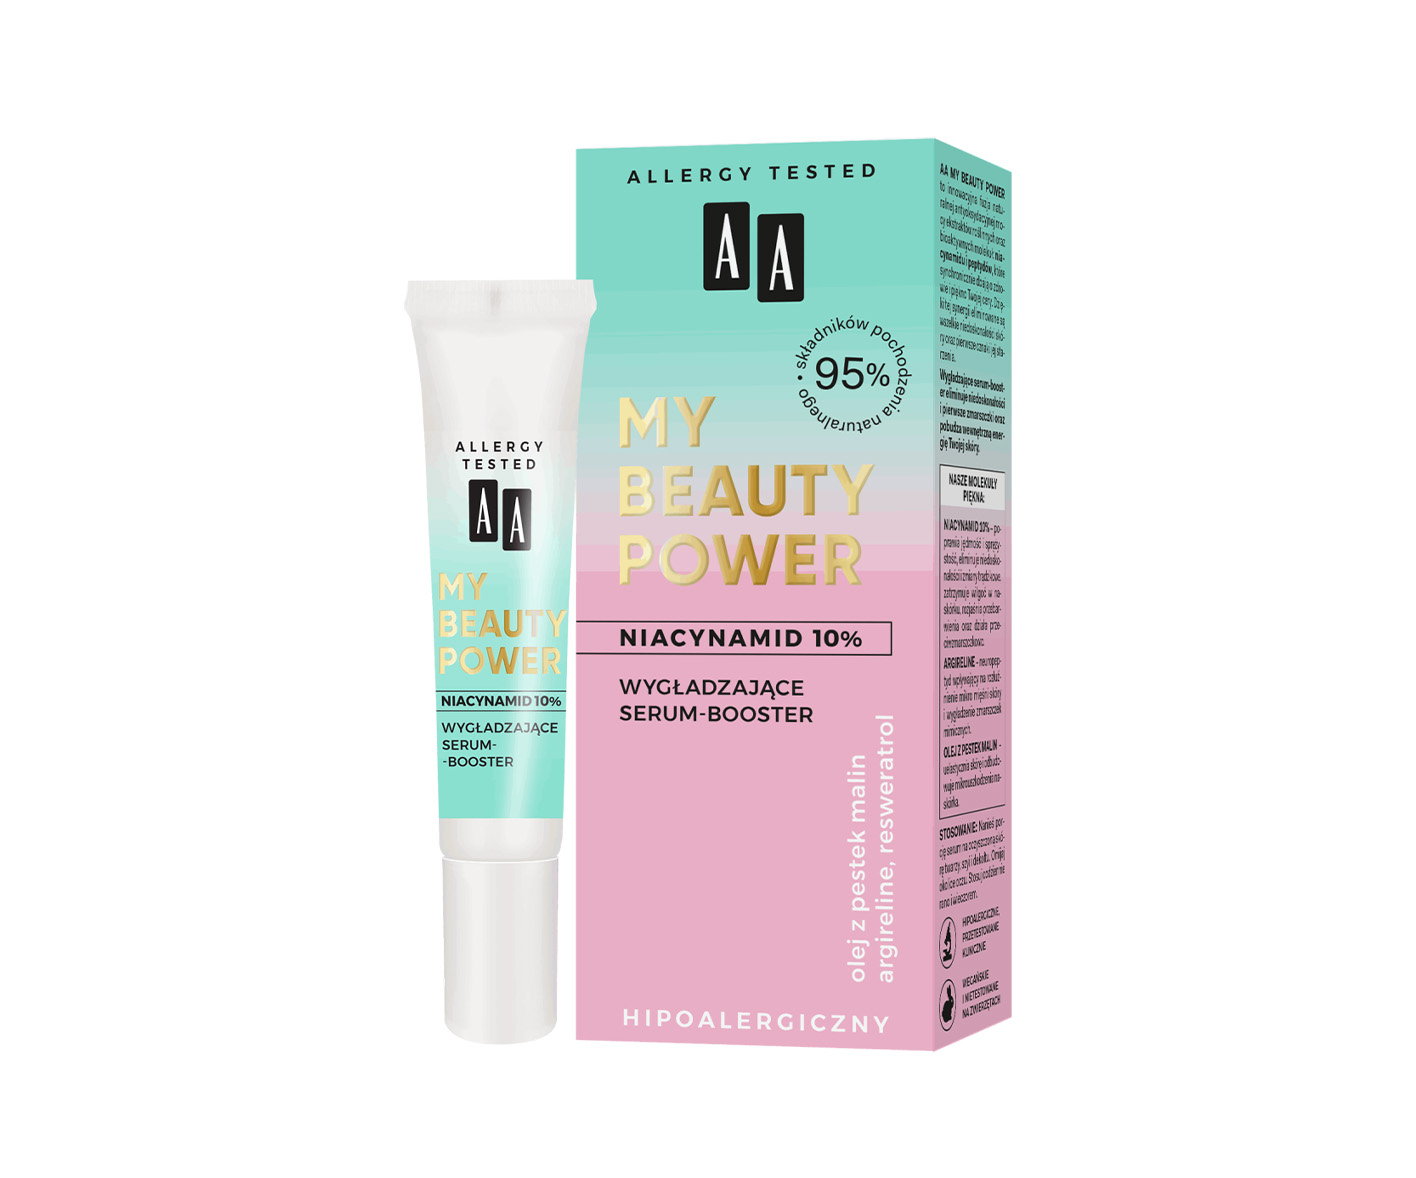  AA, My Beauty Power, Wygładzające serum-booster Niacynamid 10%